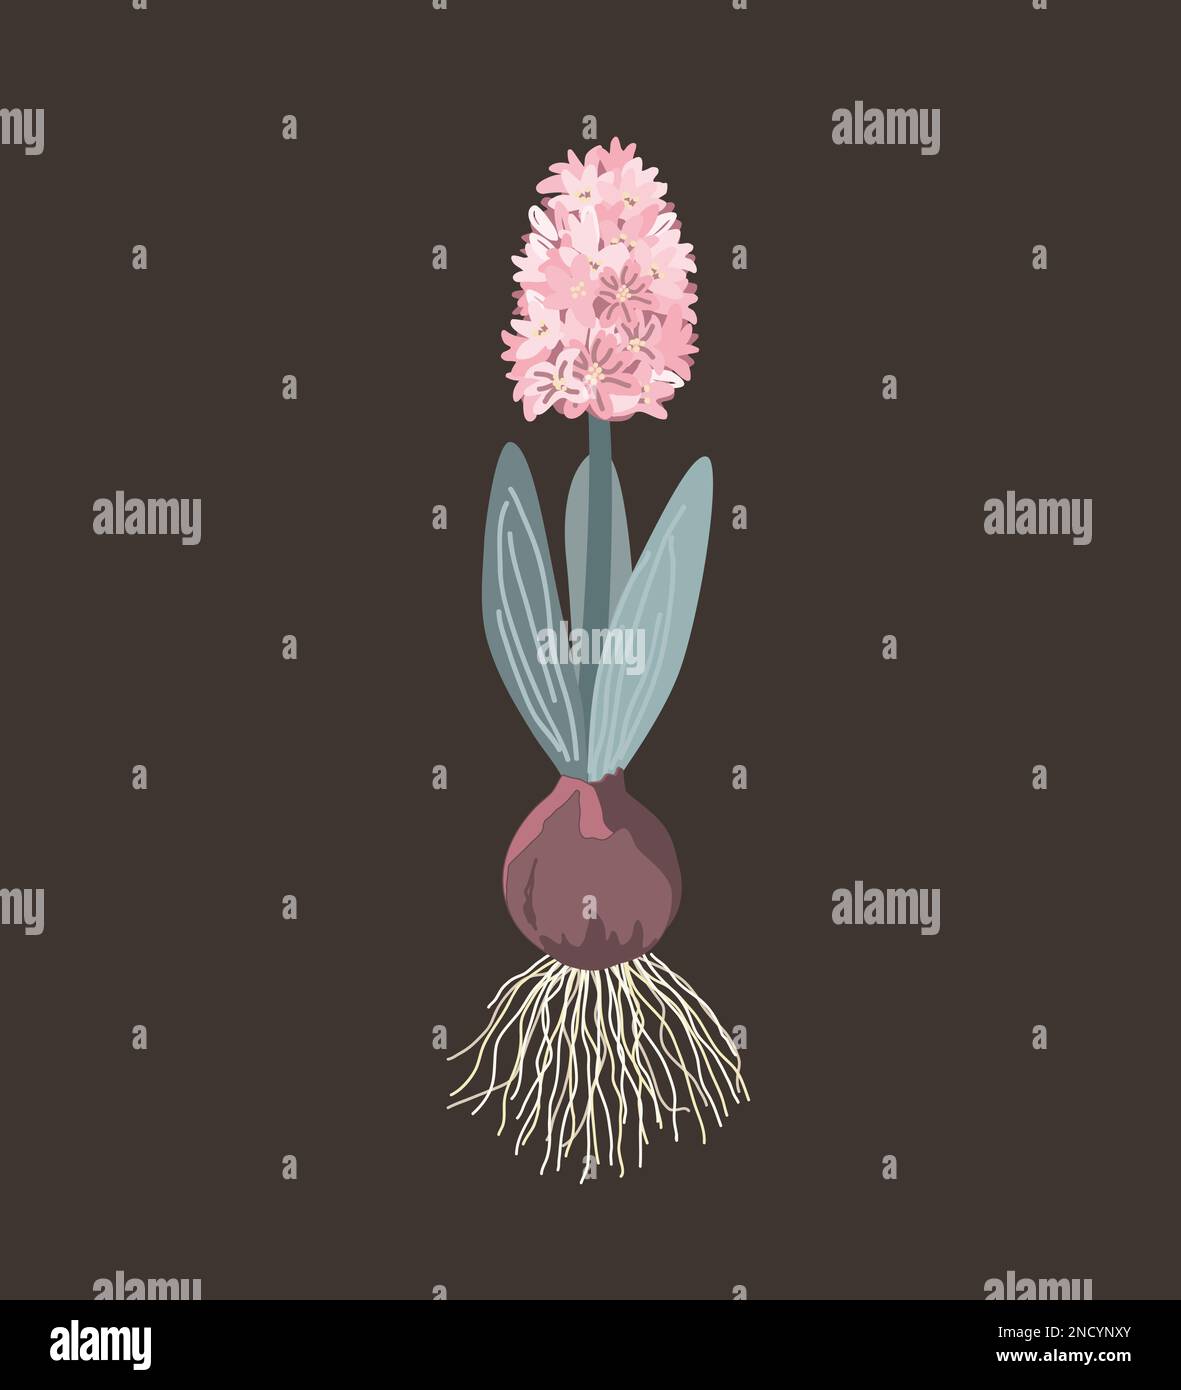 Giacinto rosa con cipolla, radici, foglie e fiori isolati su fondo scuro. Illustrazione vettoriale. Illustrazione Vettoriale